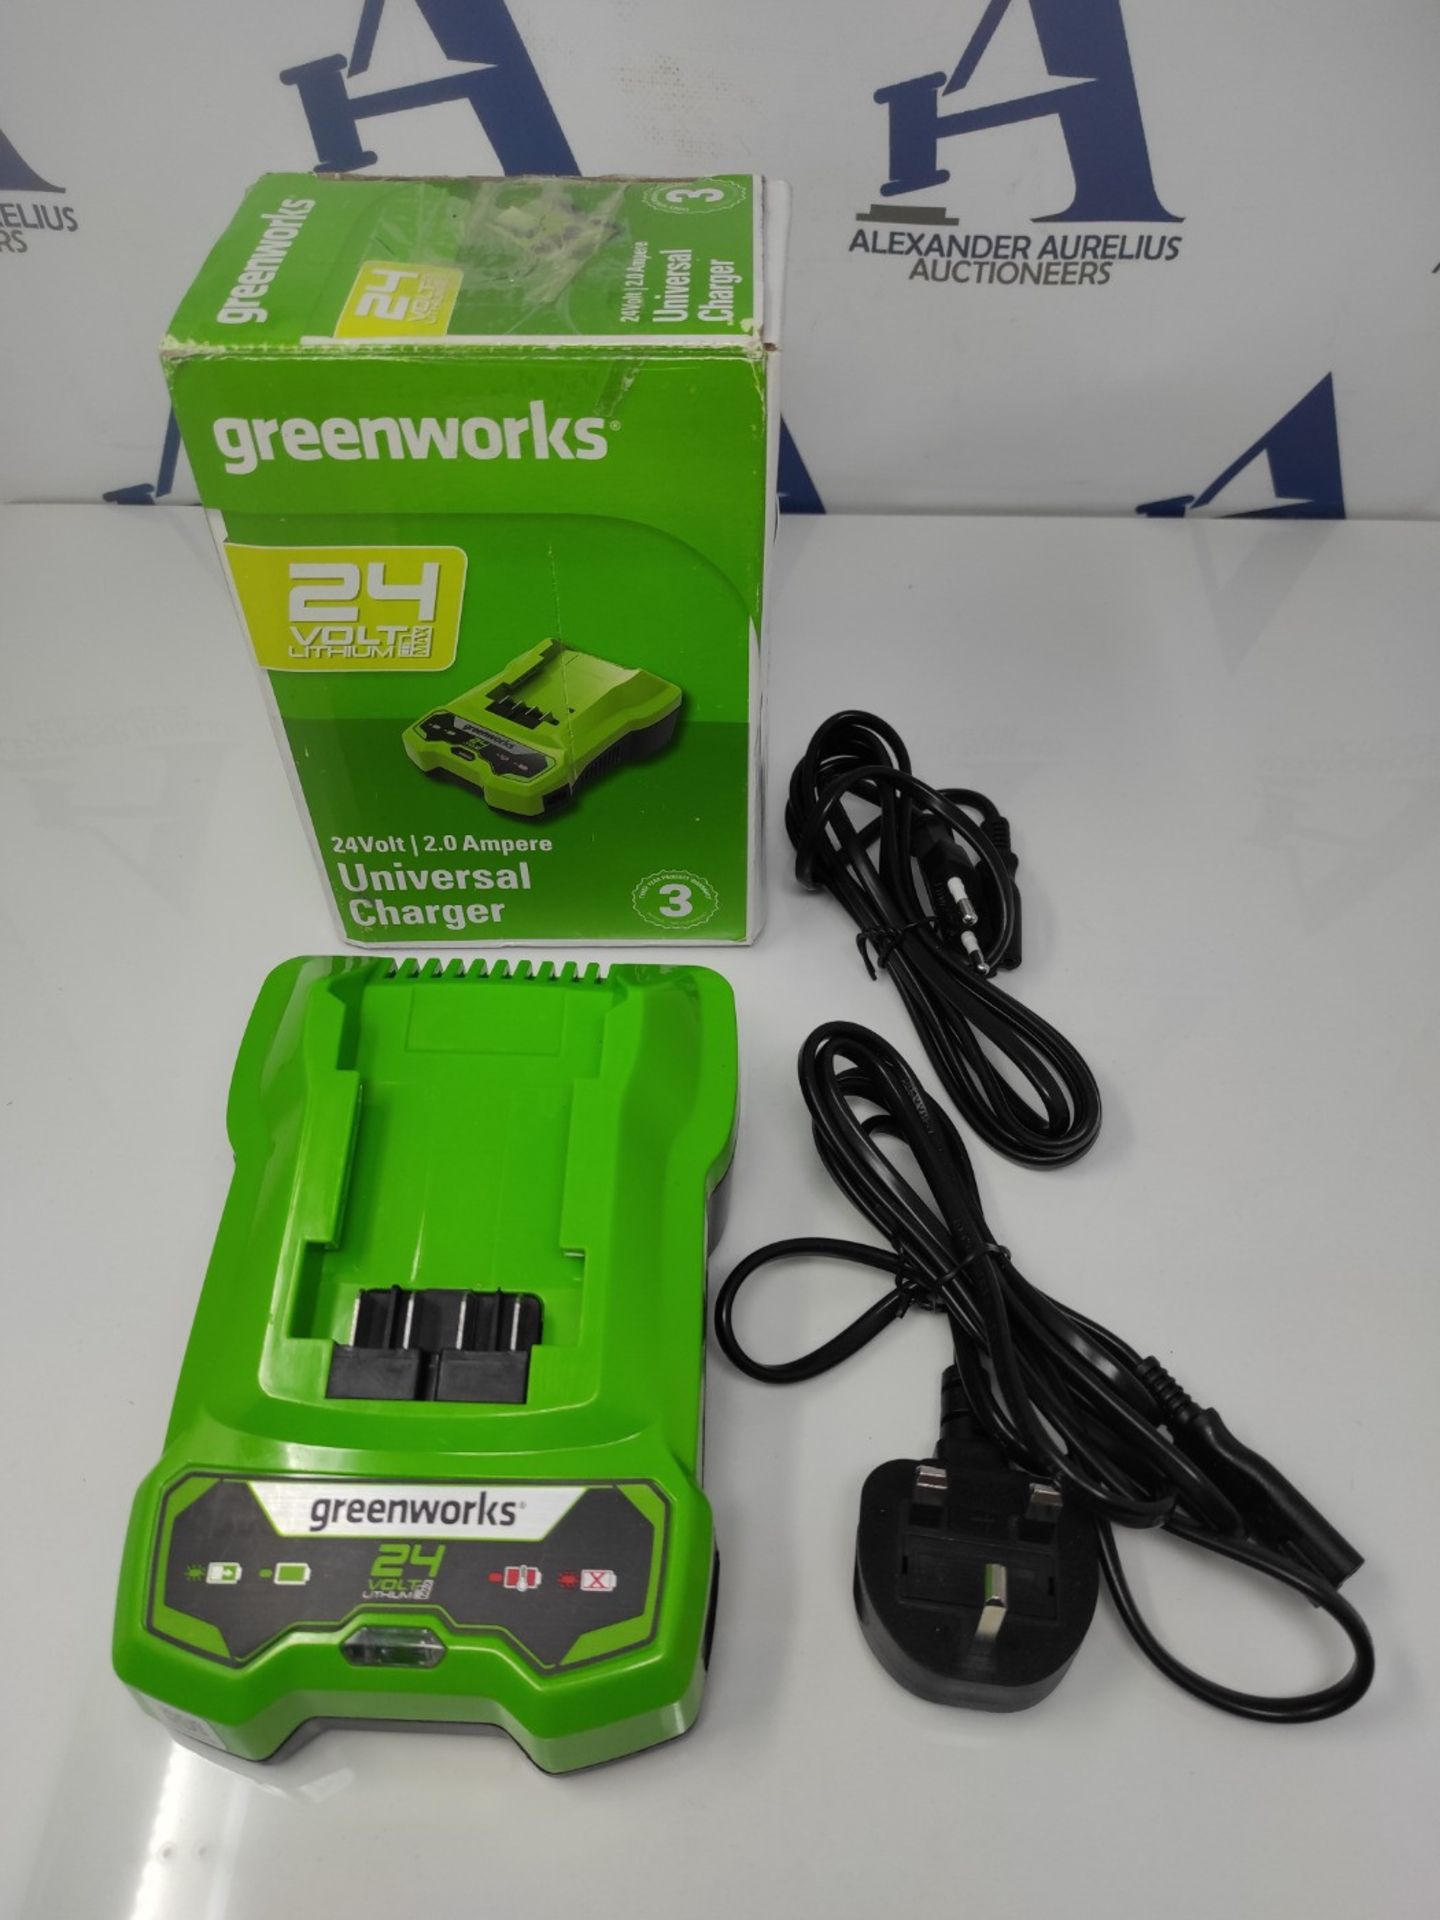 Greenworks 24V Battery Charger. Suitable for all Batteries of the 24V Greenworks Serie - Bild 2 aus 2